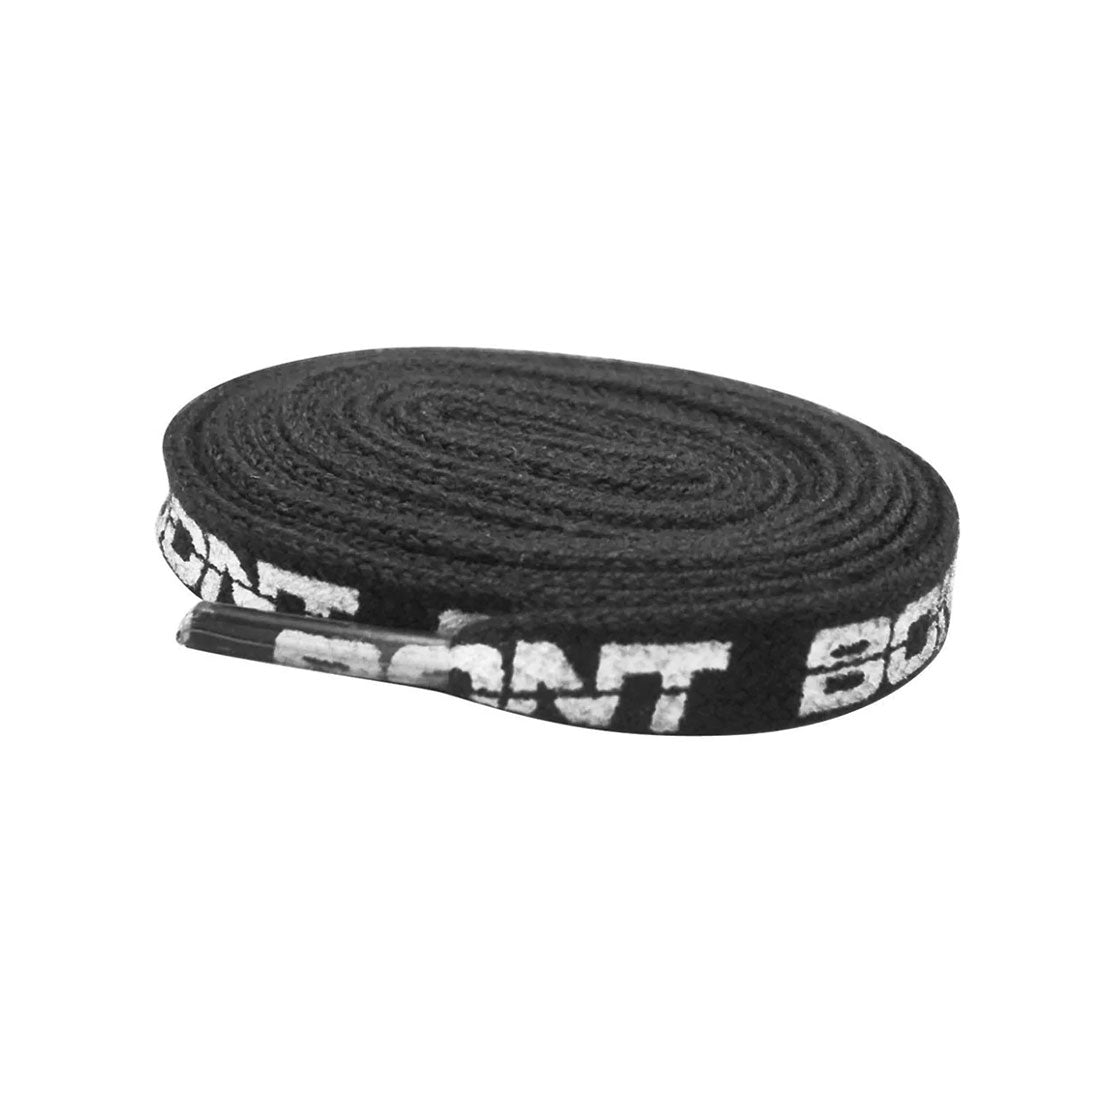 BONT Skate 10mm Laces - 80cm / 31in - Black Laces